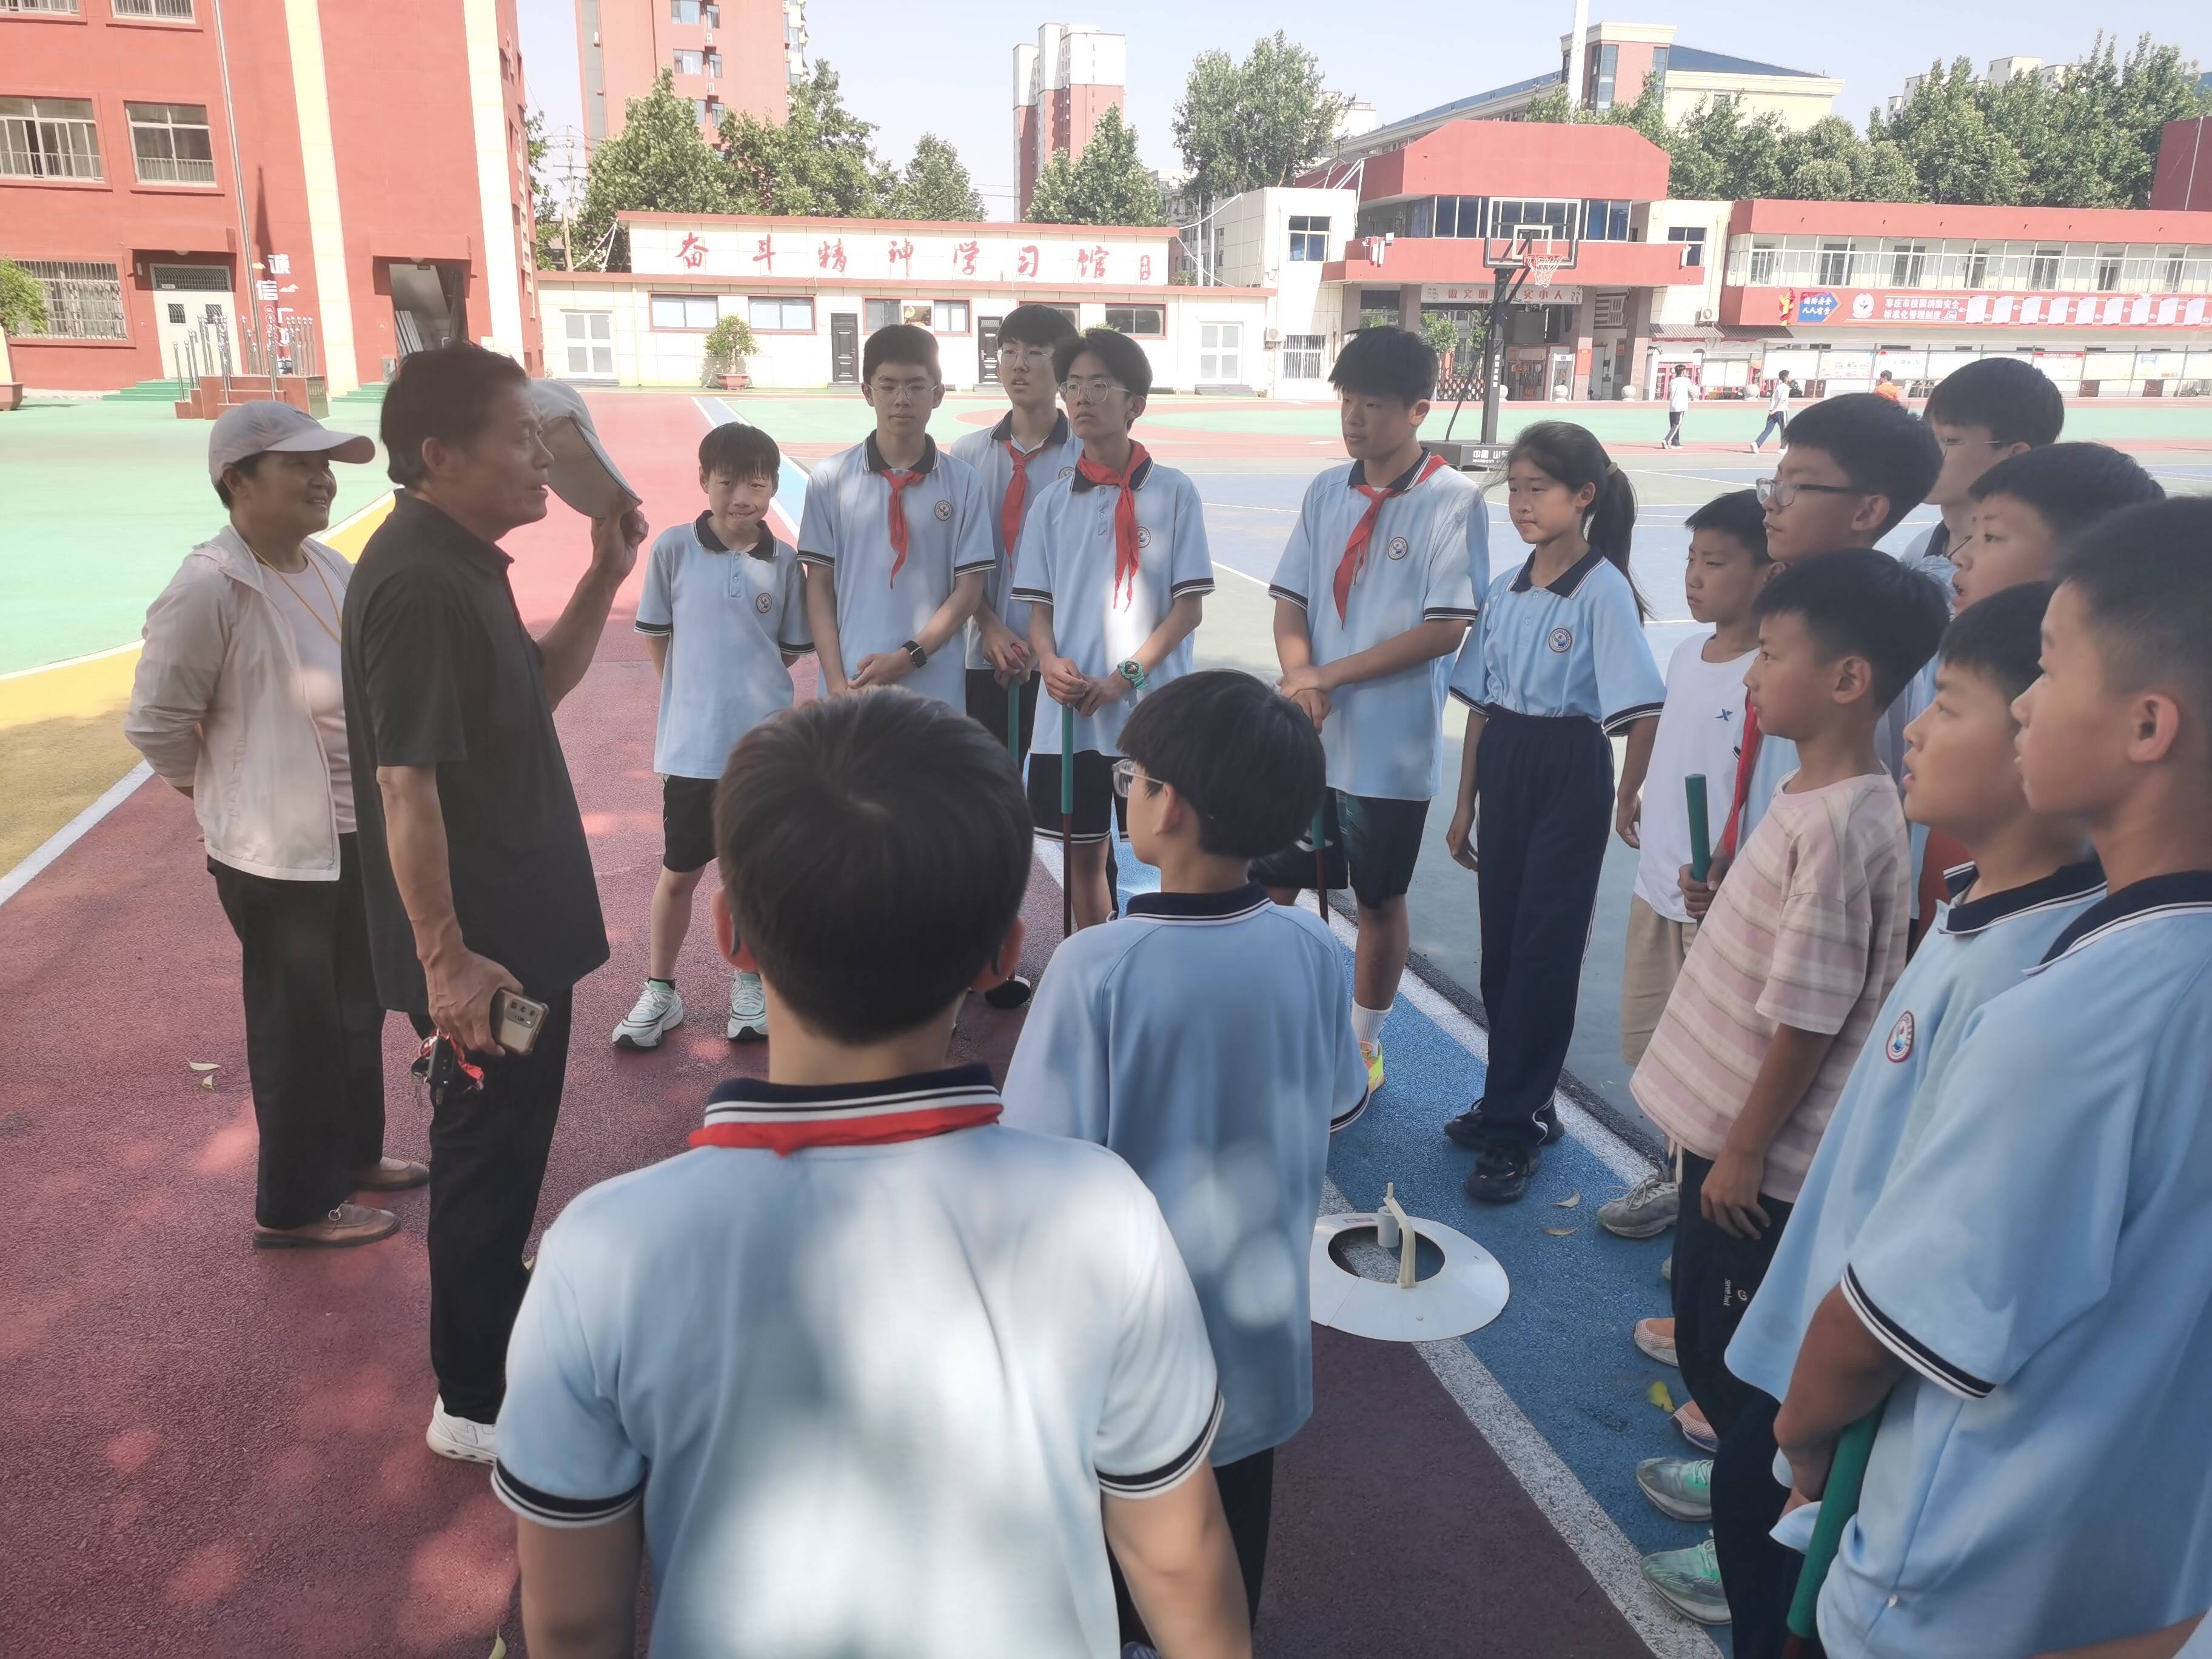 自由挥洒,转动生命之美——枣庄市峄城区实验小学开展健步球培训活动